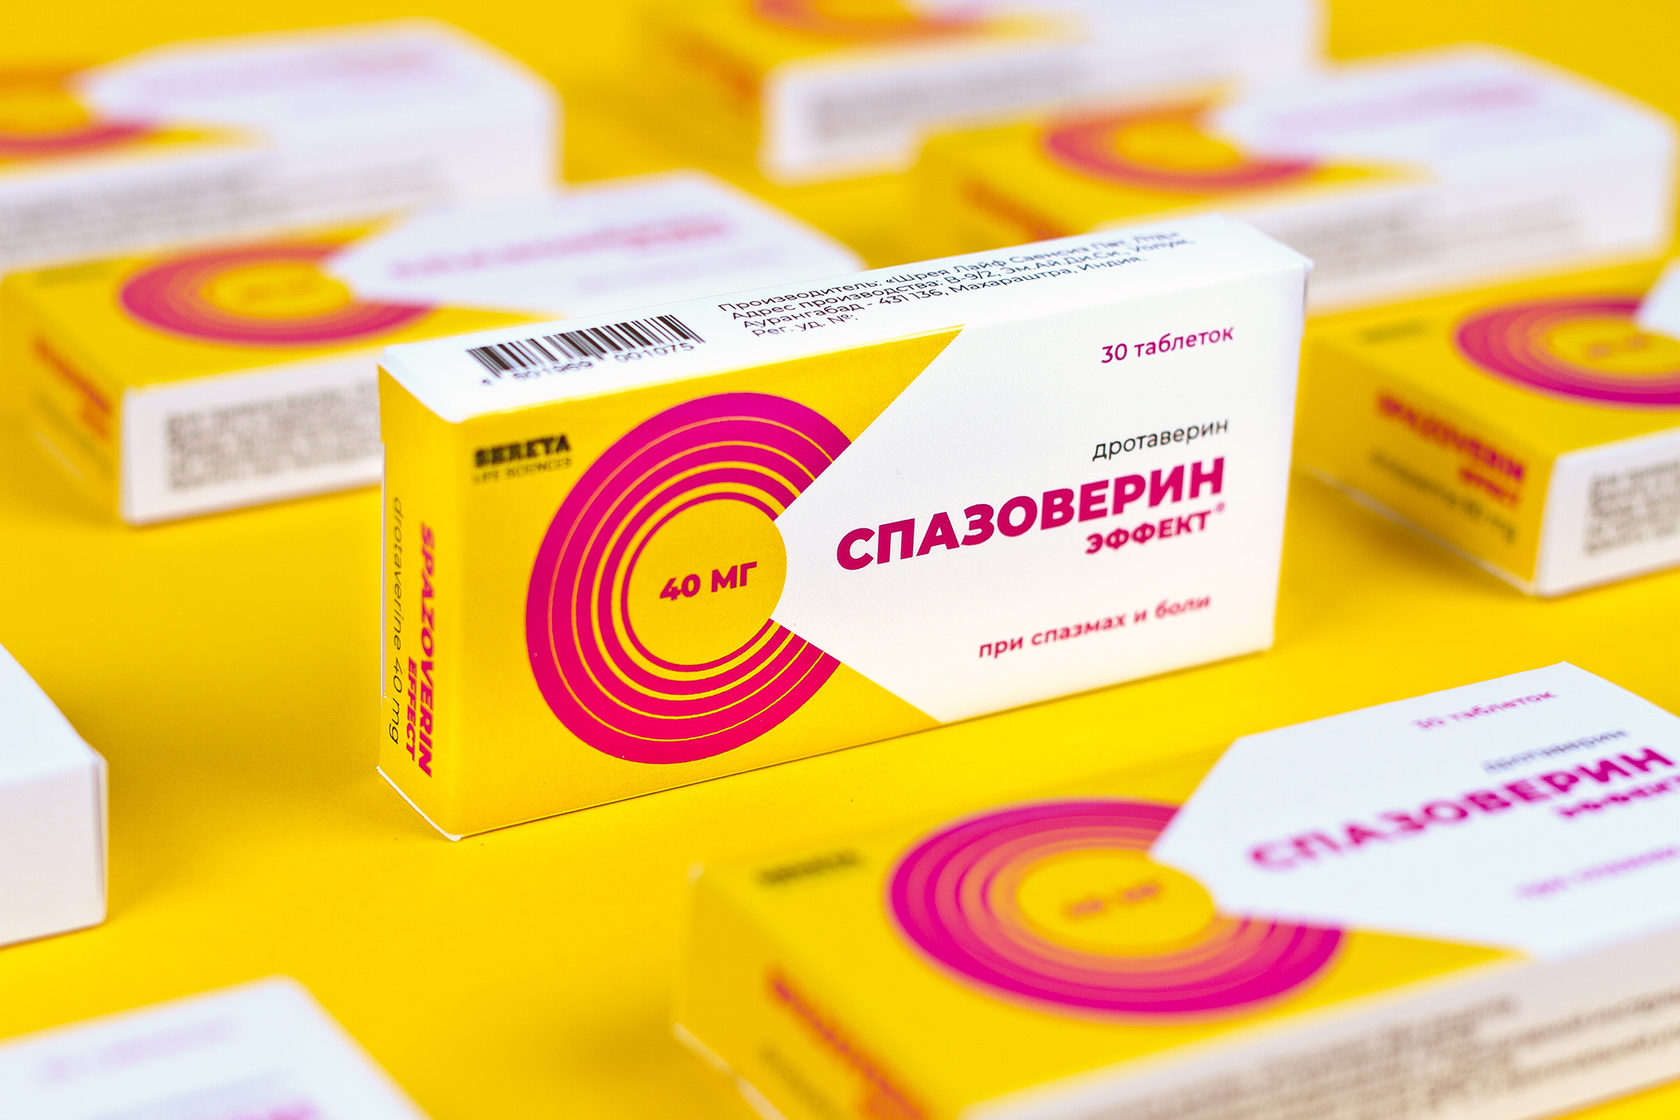 Дизайн упаковки лекарственного препарата Спазоверин